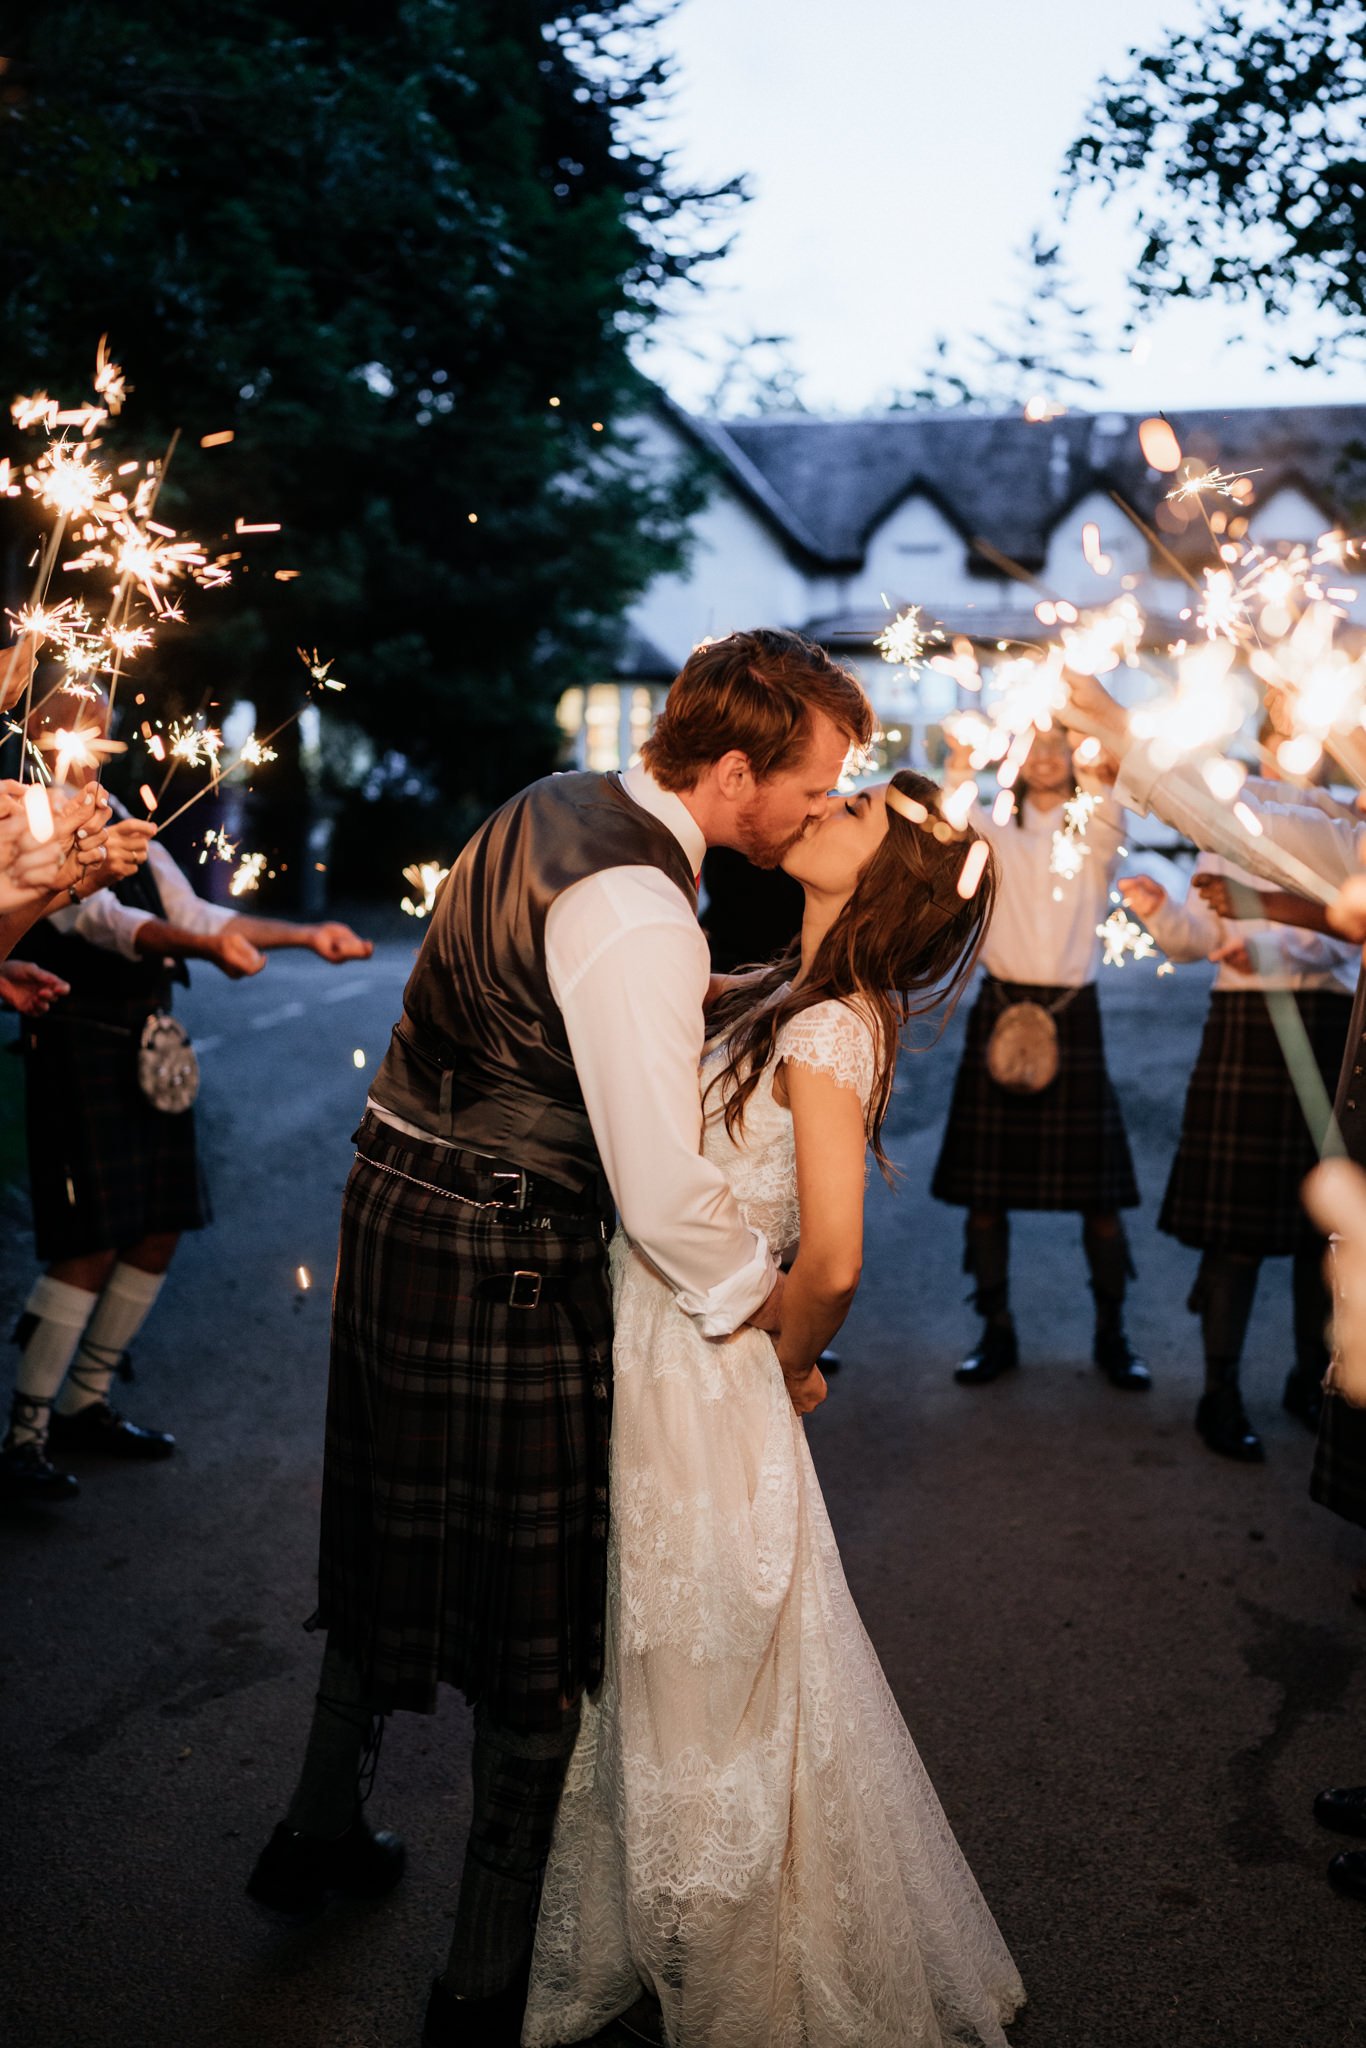 Glen Clova Hotel wedding photography | Aberdeenshire wedding photographer and videographer-81.jpg